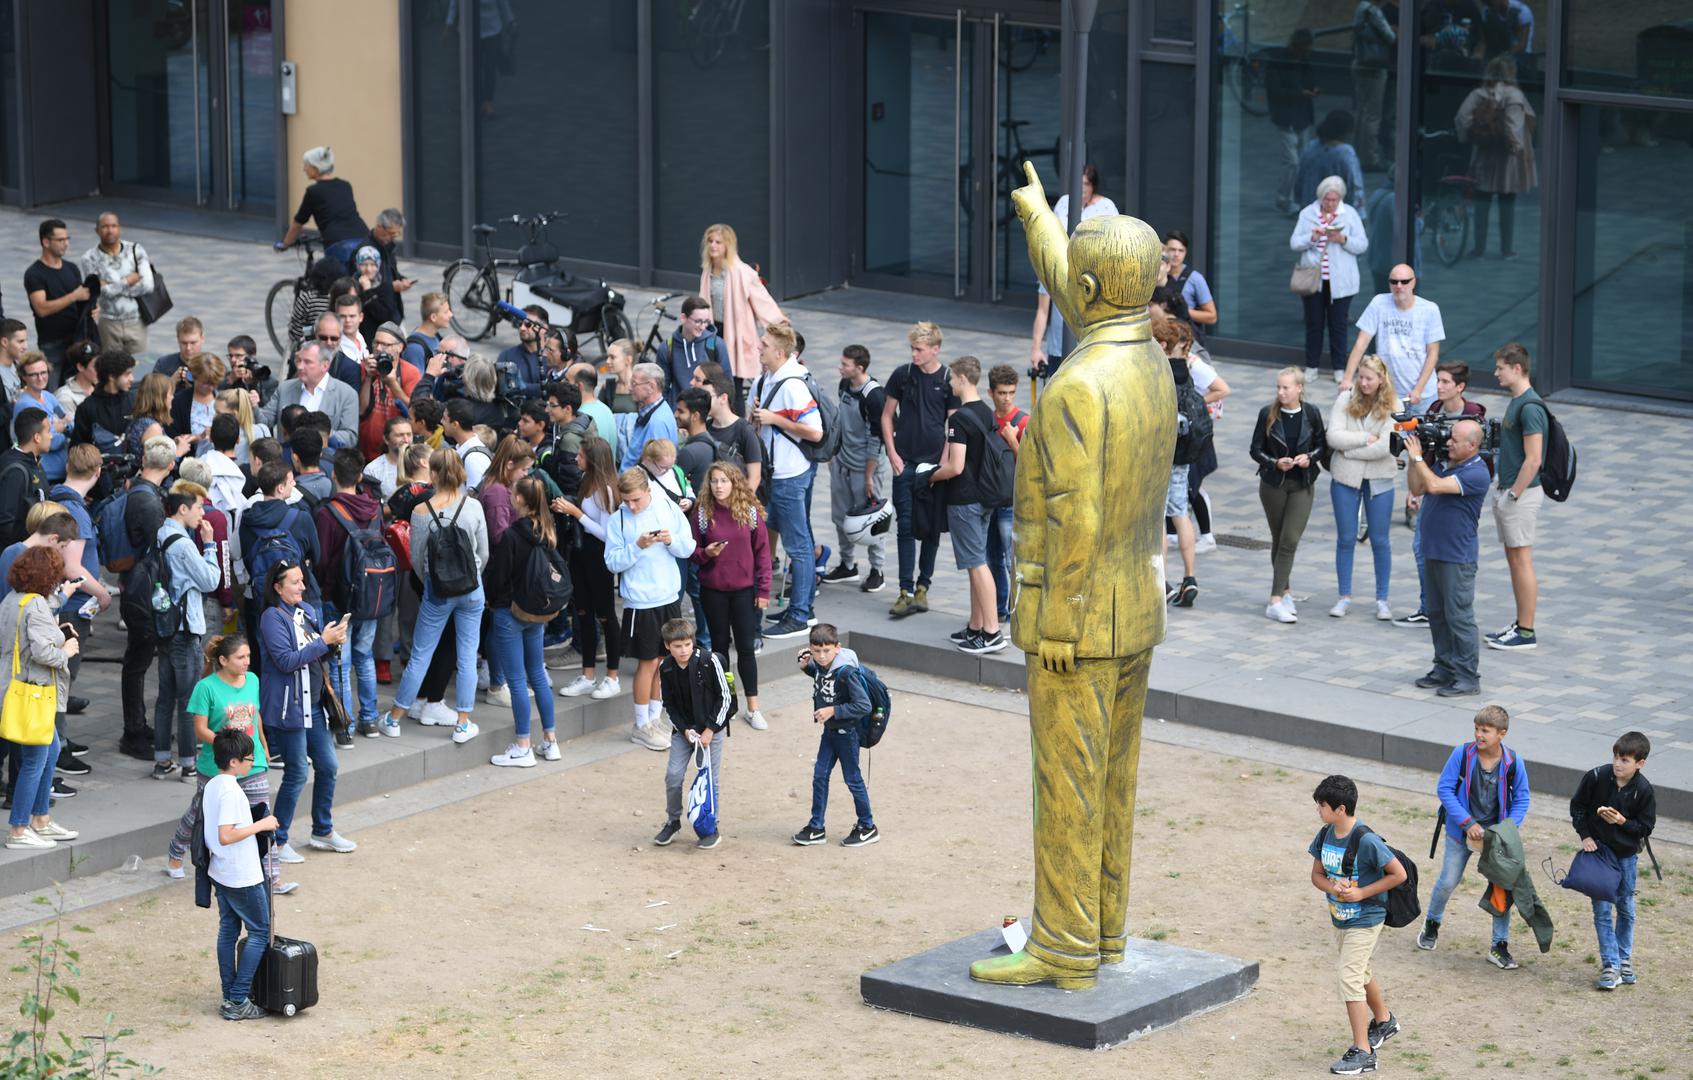 Gradske vlasti odobrile su spomenik u sklopu Wiesbadenskog Biennalea, ali nisu znali da će biti riječ o Erdoganu.

